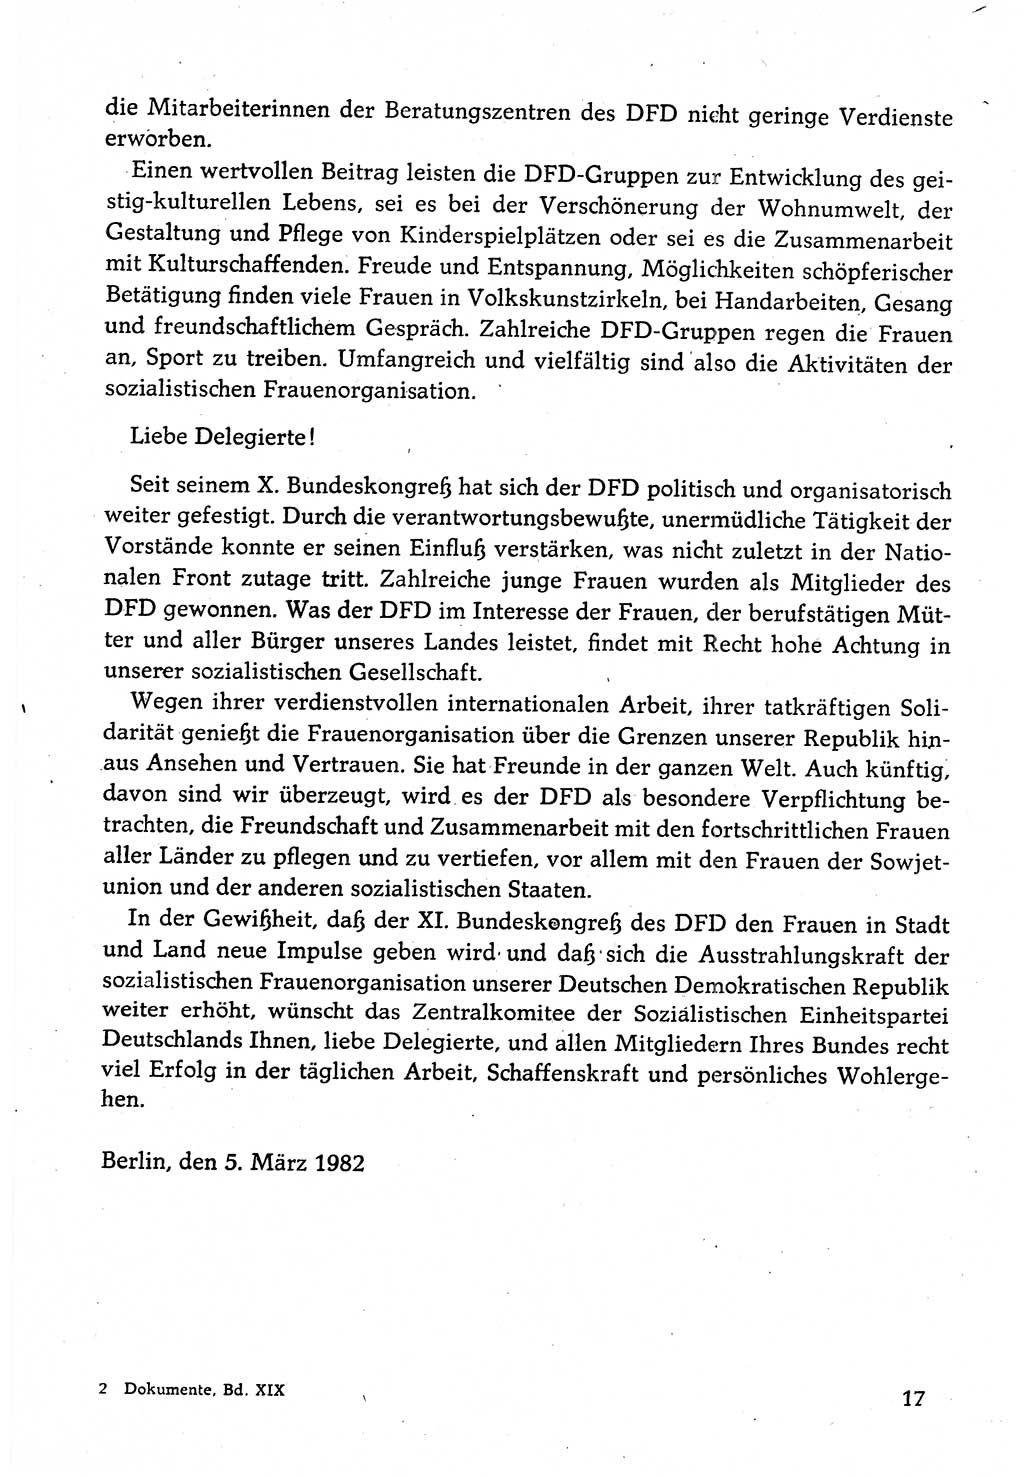 Dokumente der Sozialistischen Einheitspartei Deutschlands (SED) [Deutsche Demokratische Republik (DDR)] 1982-1983, Seite 17 (Dok. SED DDR 1982-1983, S. 17)